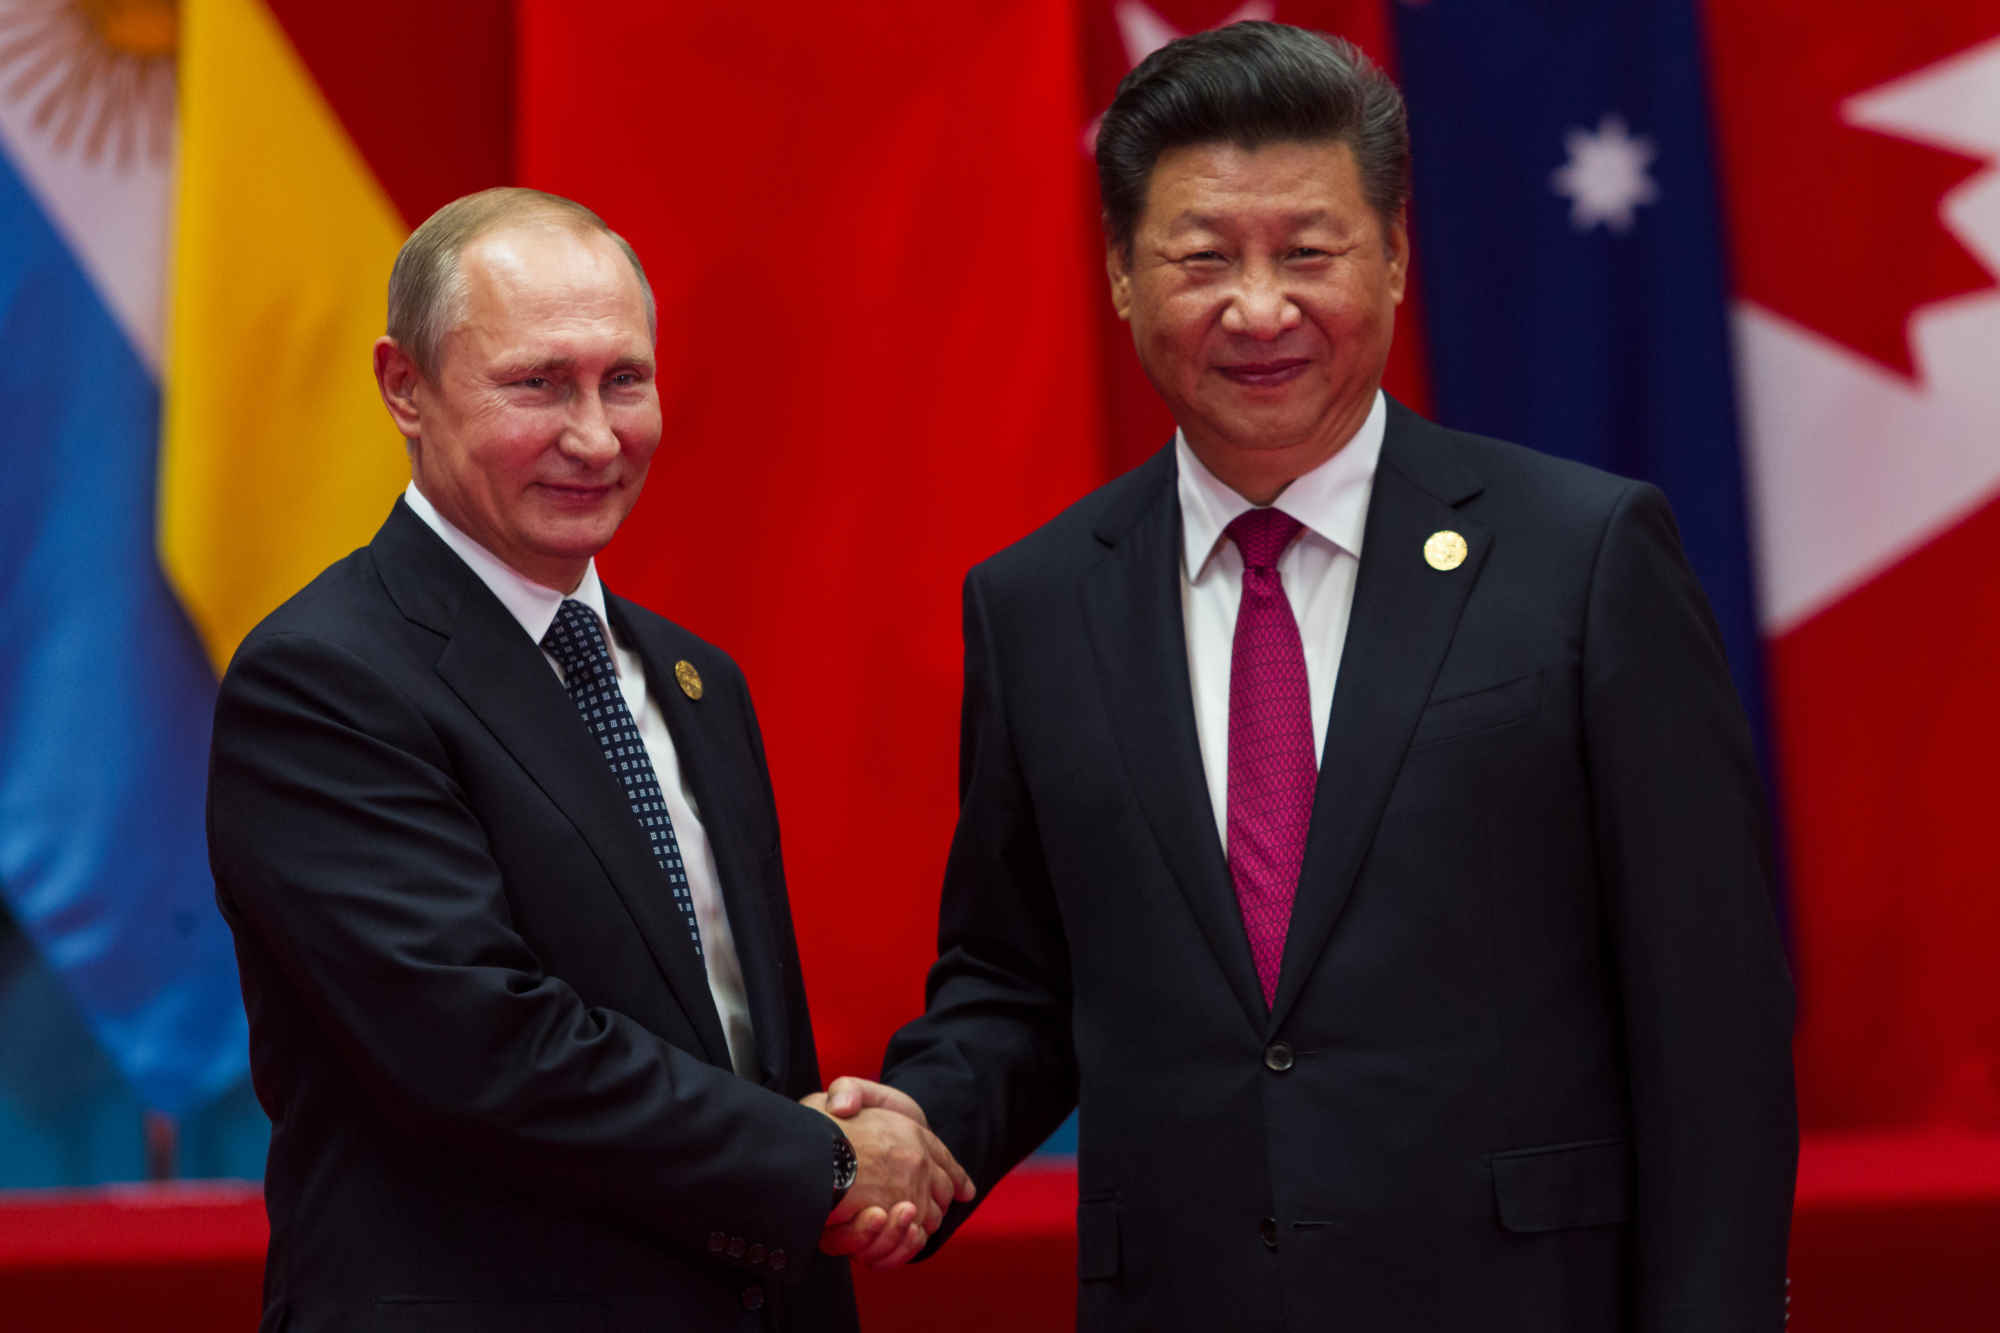 Putin's Invasion of Ukraine and China-Russia Relations